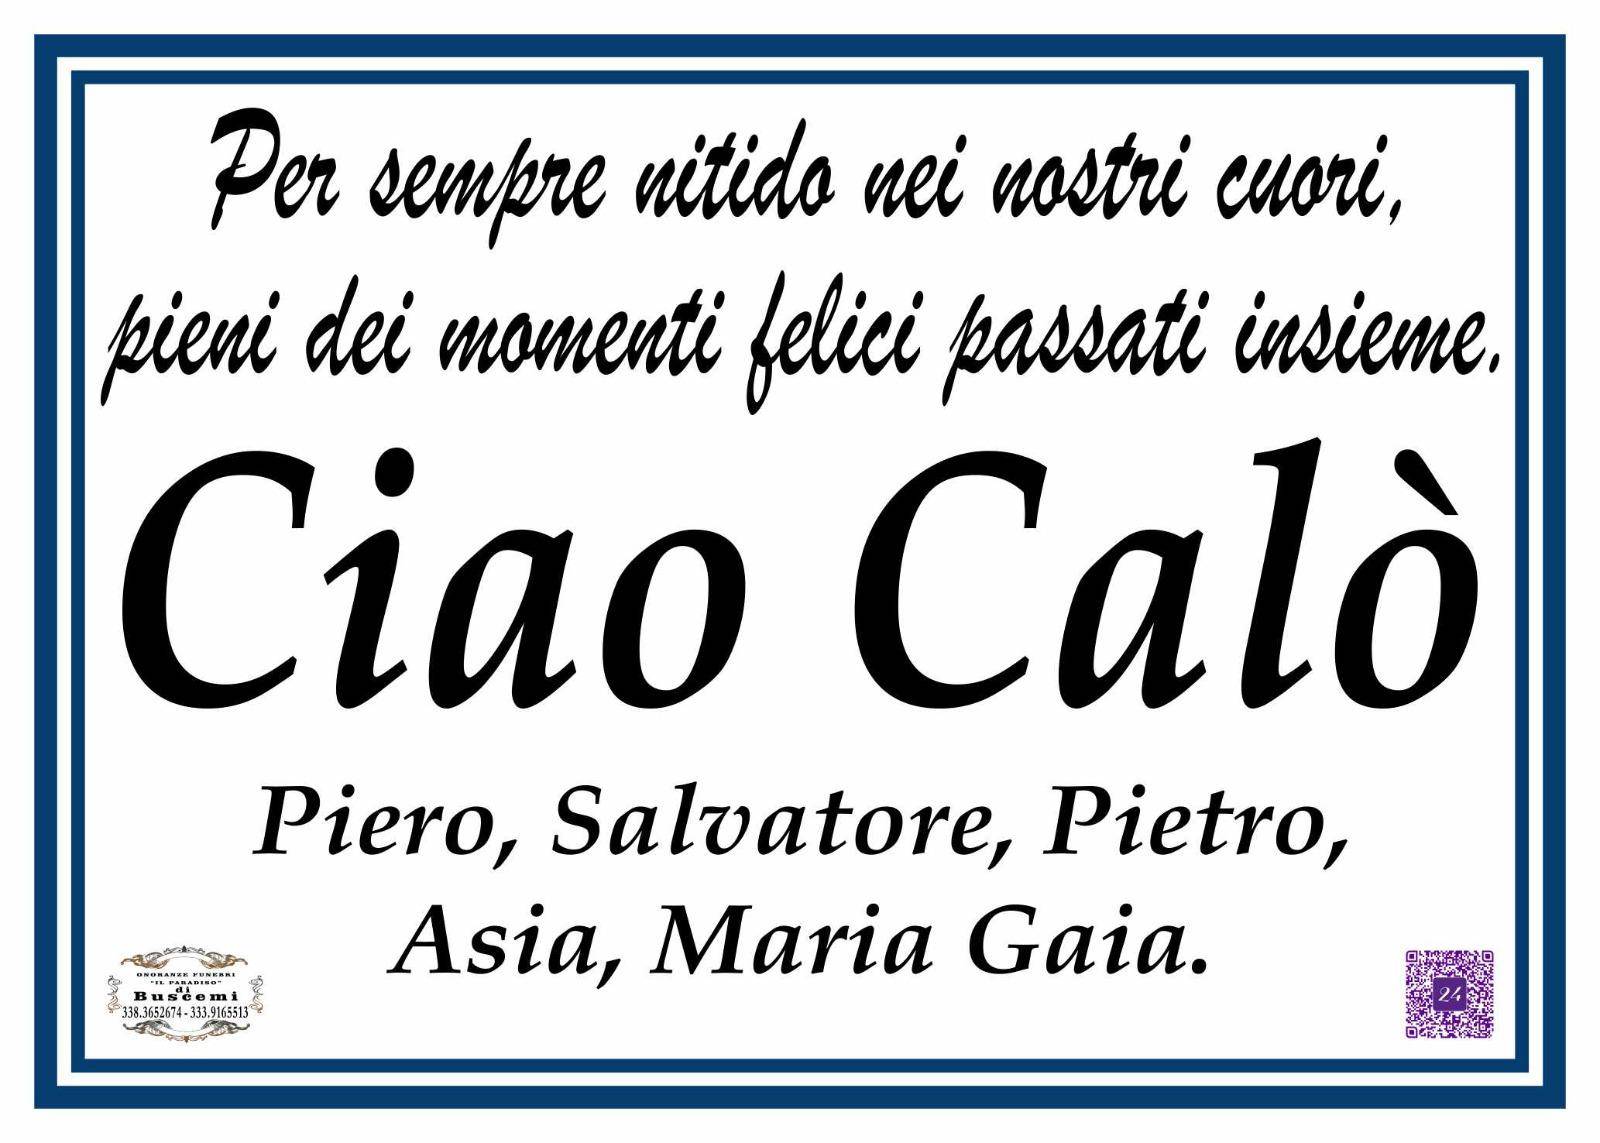 Calogero Pace